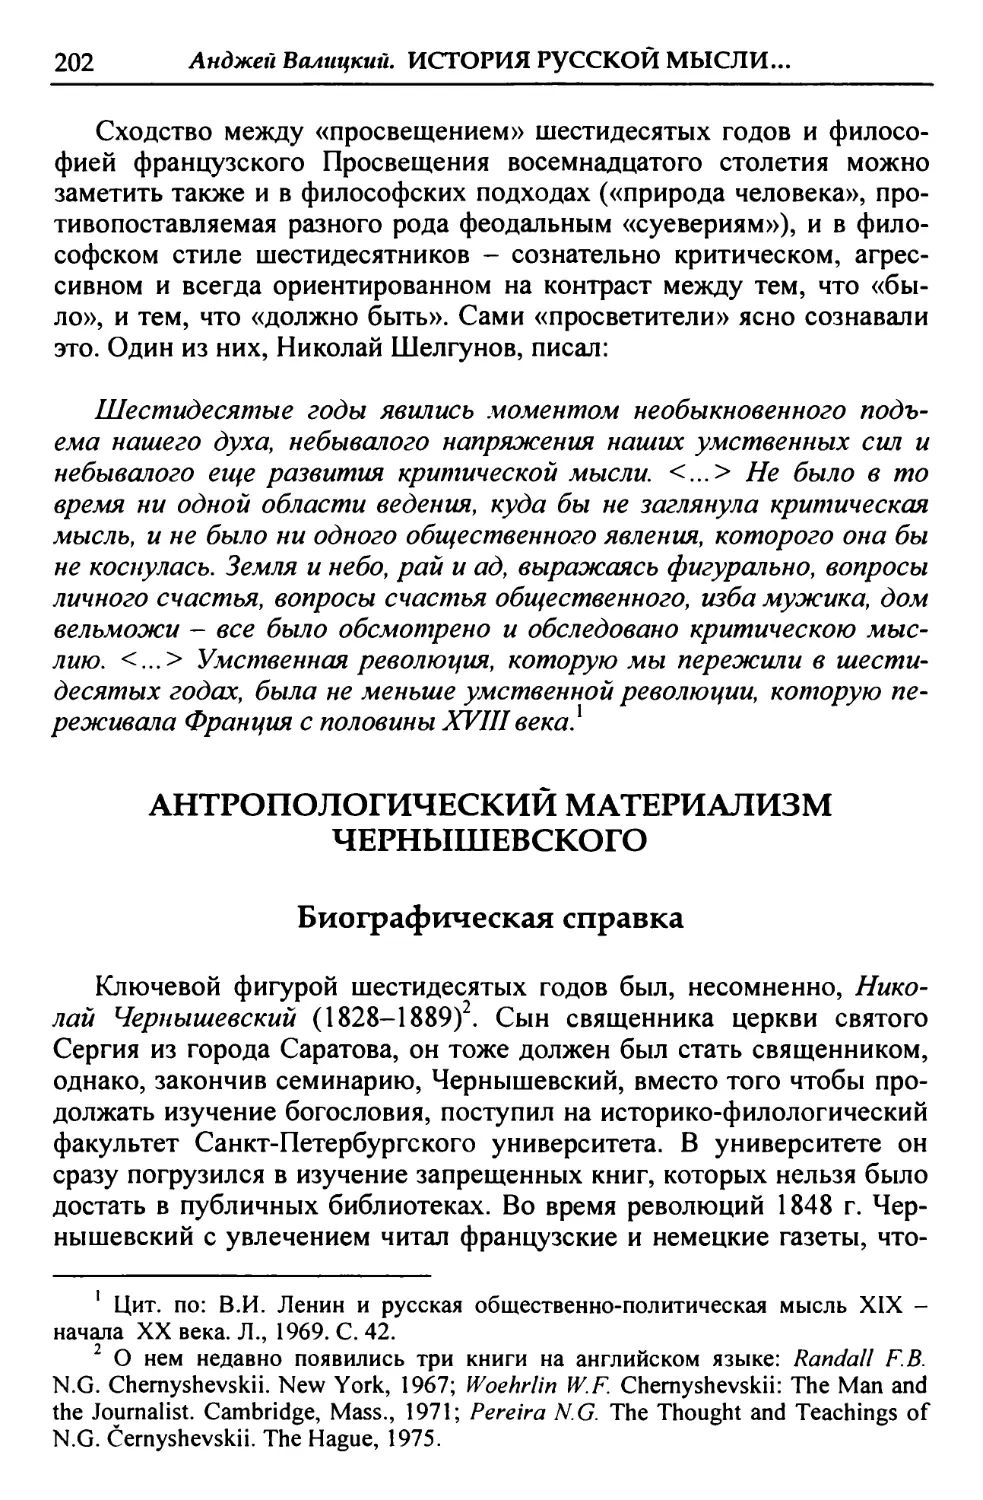 Антропологический материализм Чернышевского